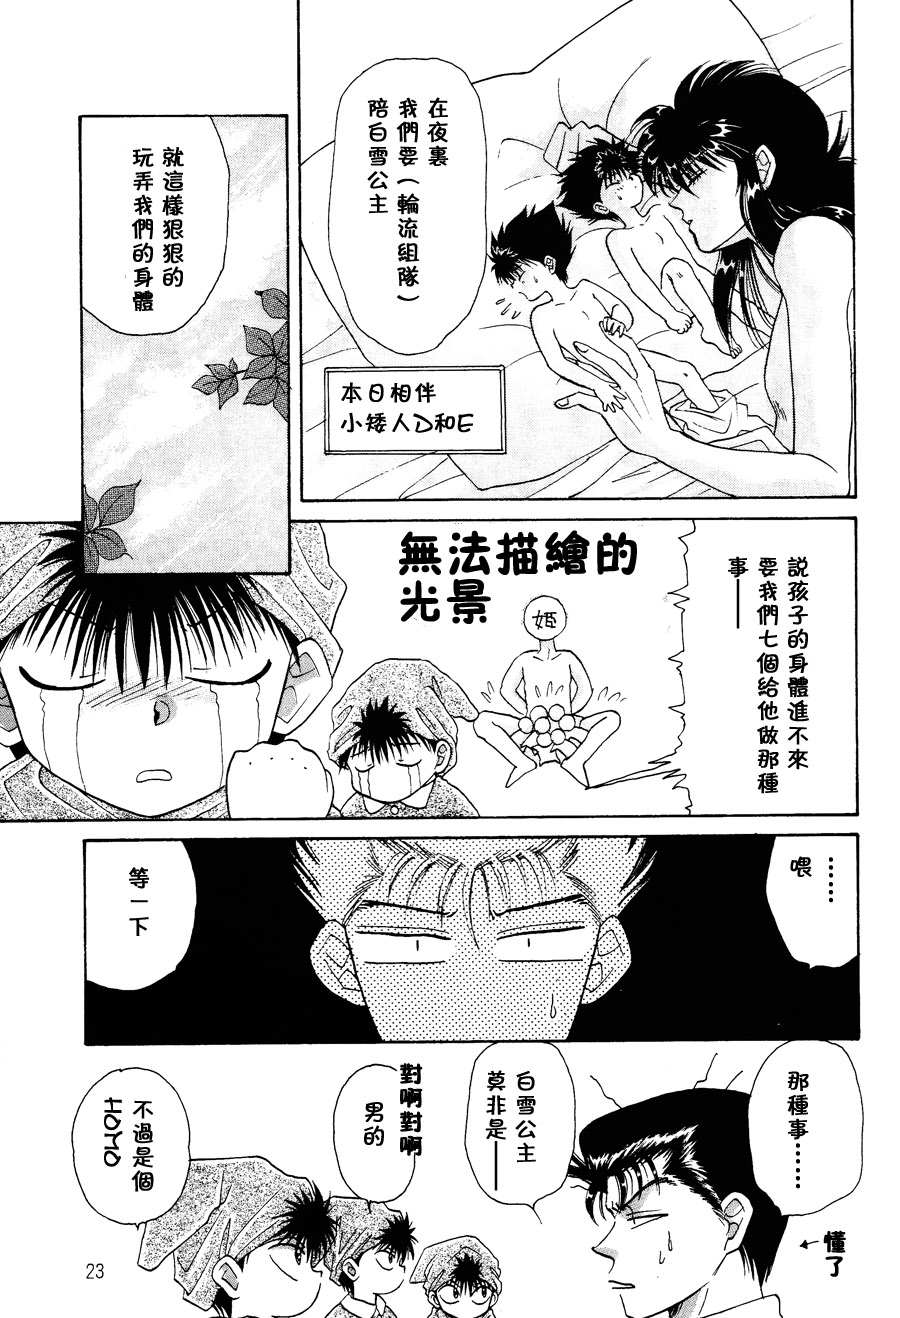 【漫画】fuji《童话王国的问候2》 Img_9517